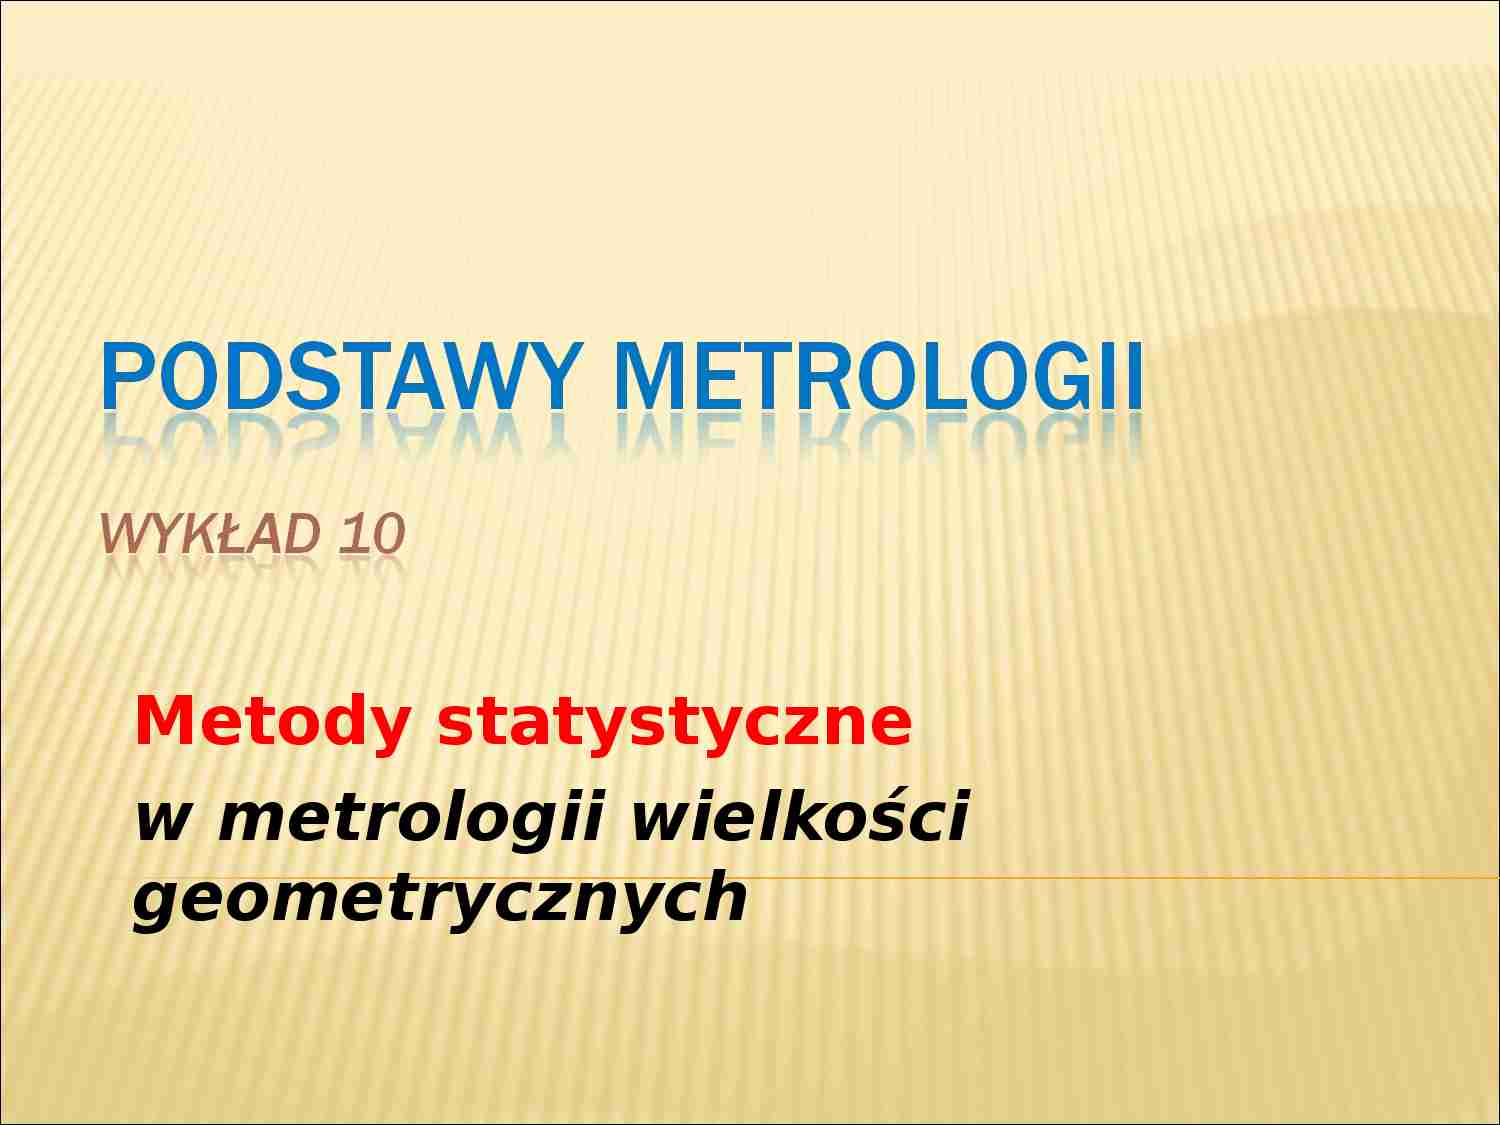 Podstawy metrologii - wykład 10 - strona 1